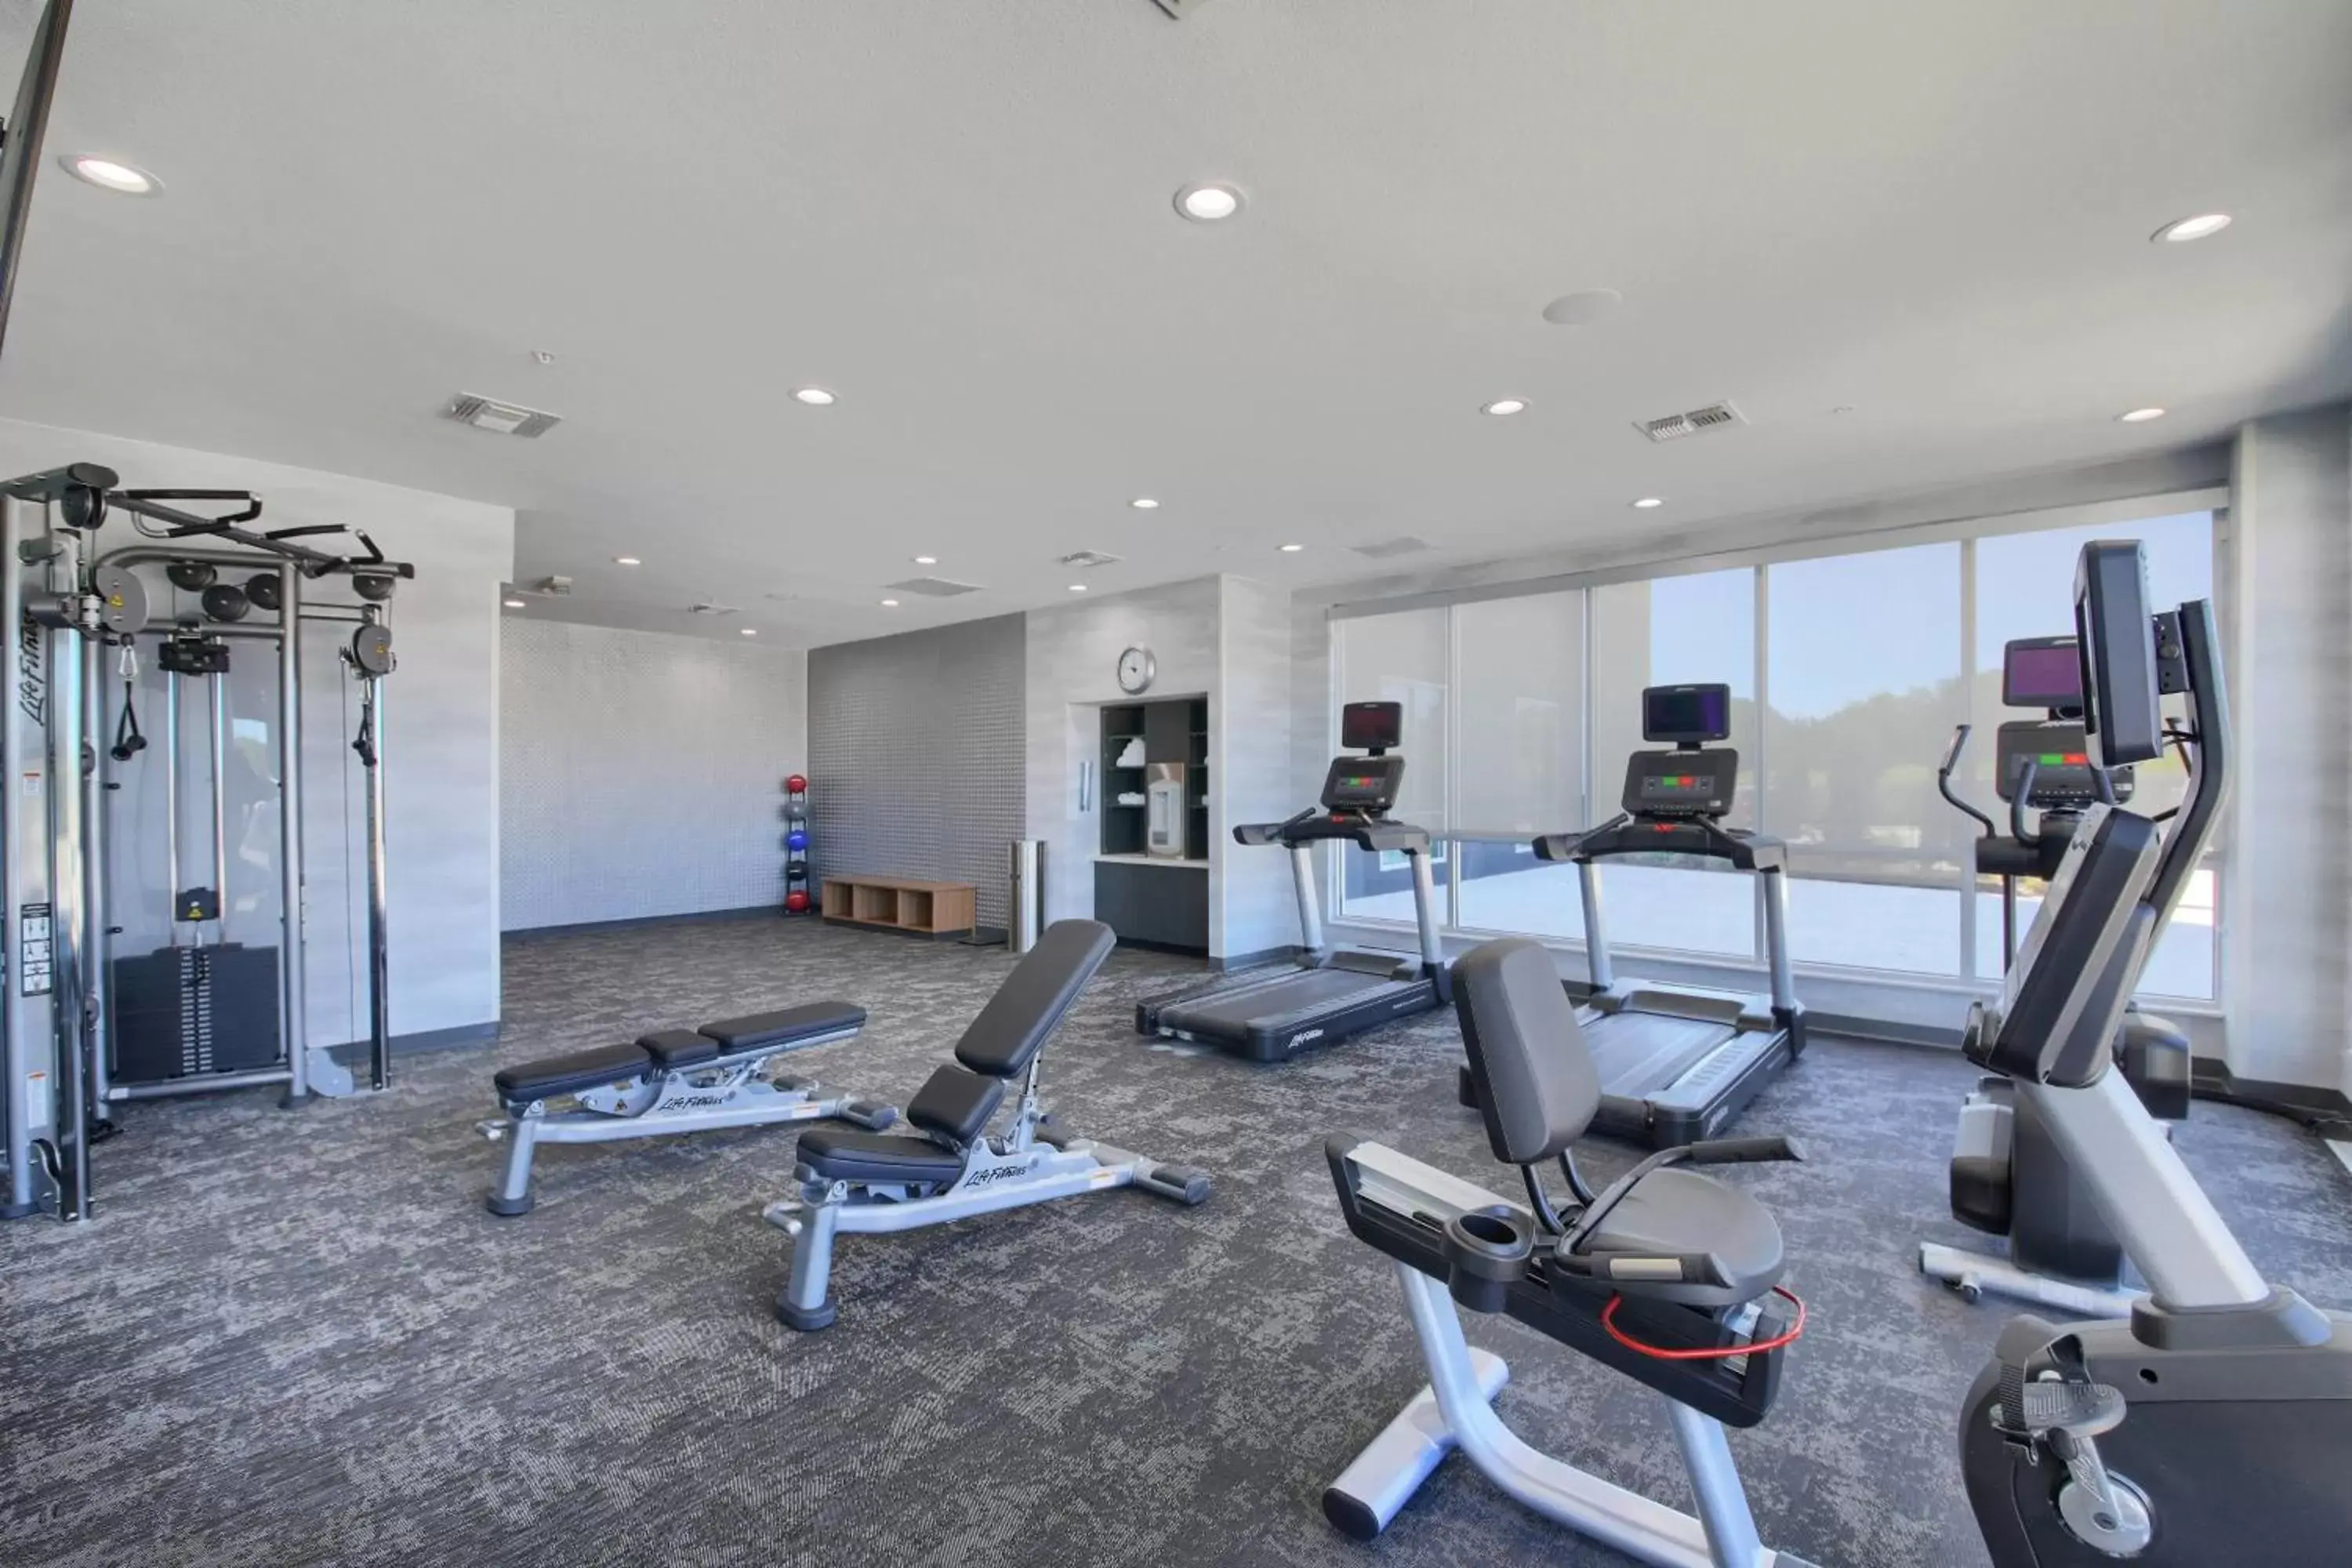 Fitness centre/facilities, Fitness Center/Facilities in Fairfield Inn & Suites by Marriott Dallas Cedar Hill